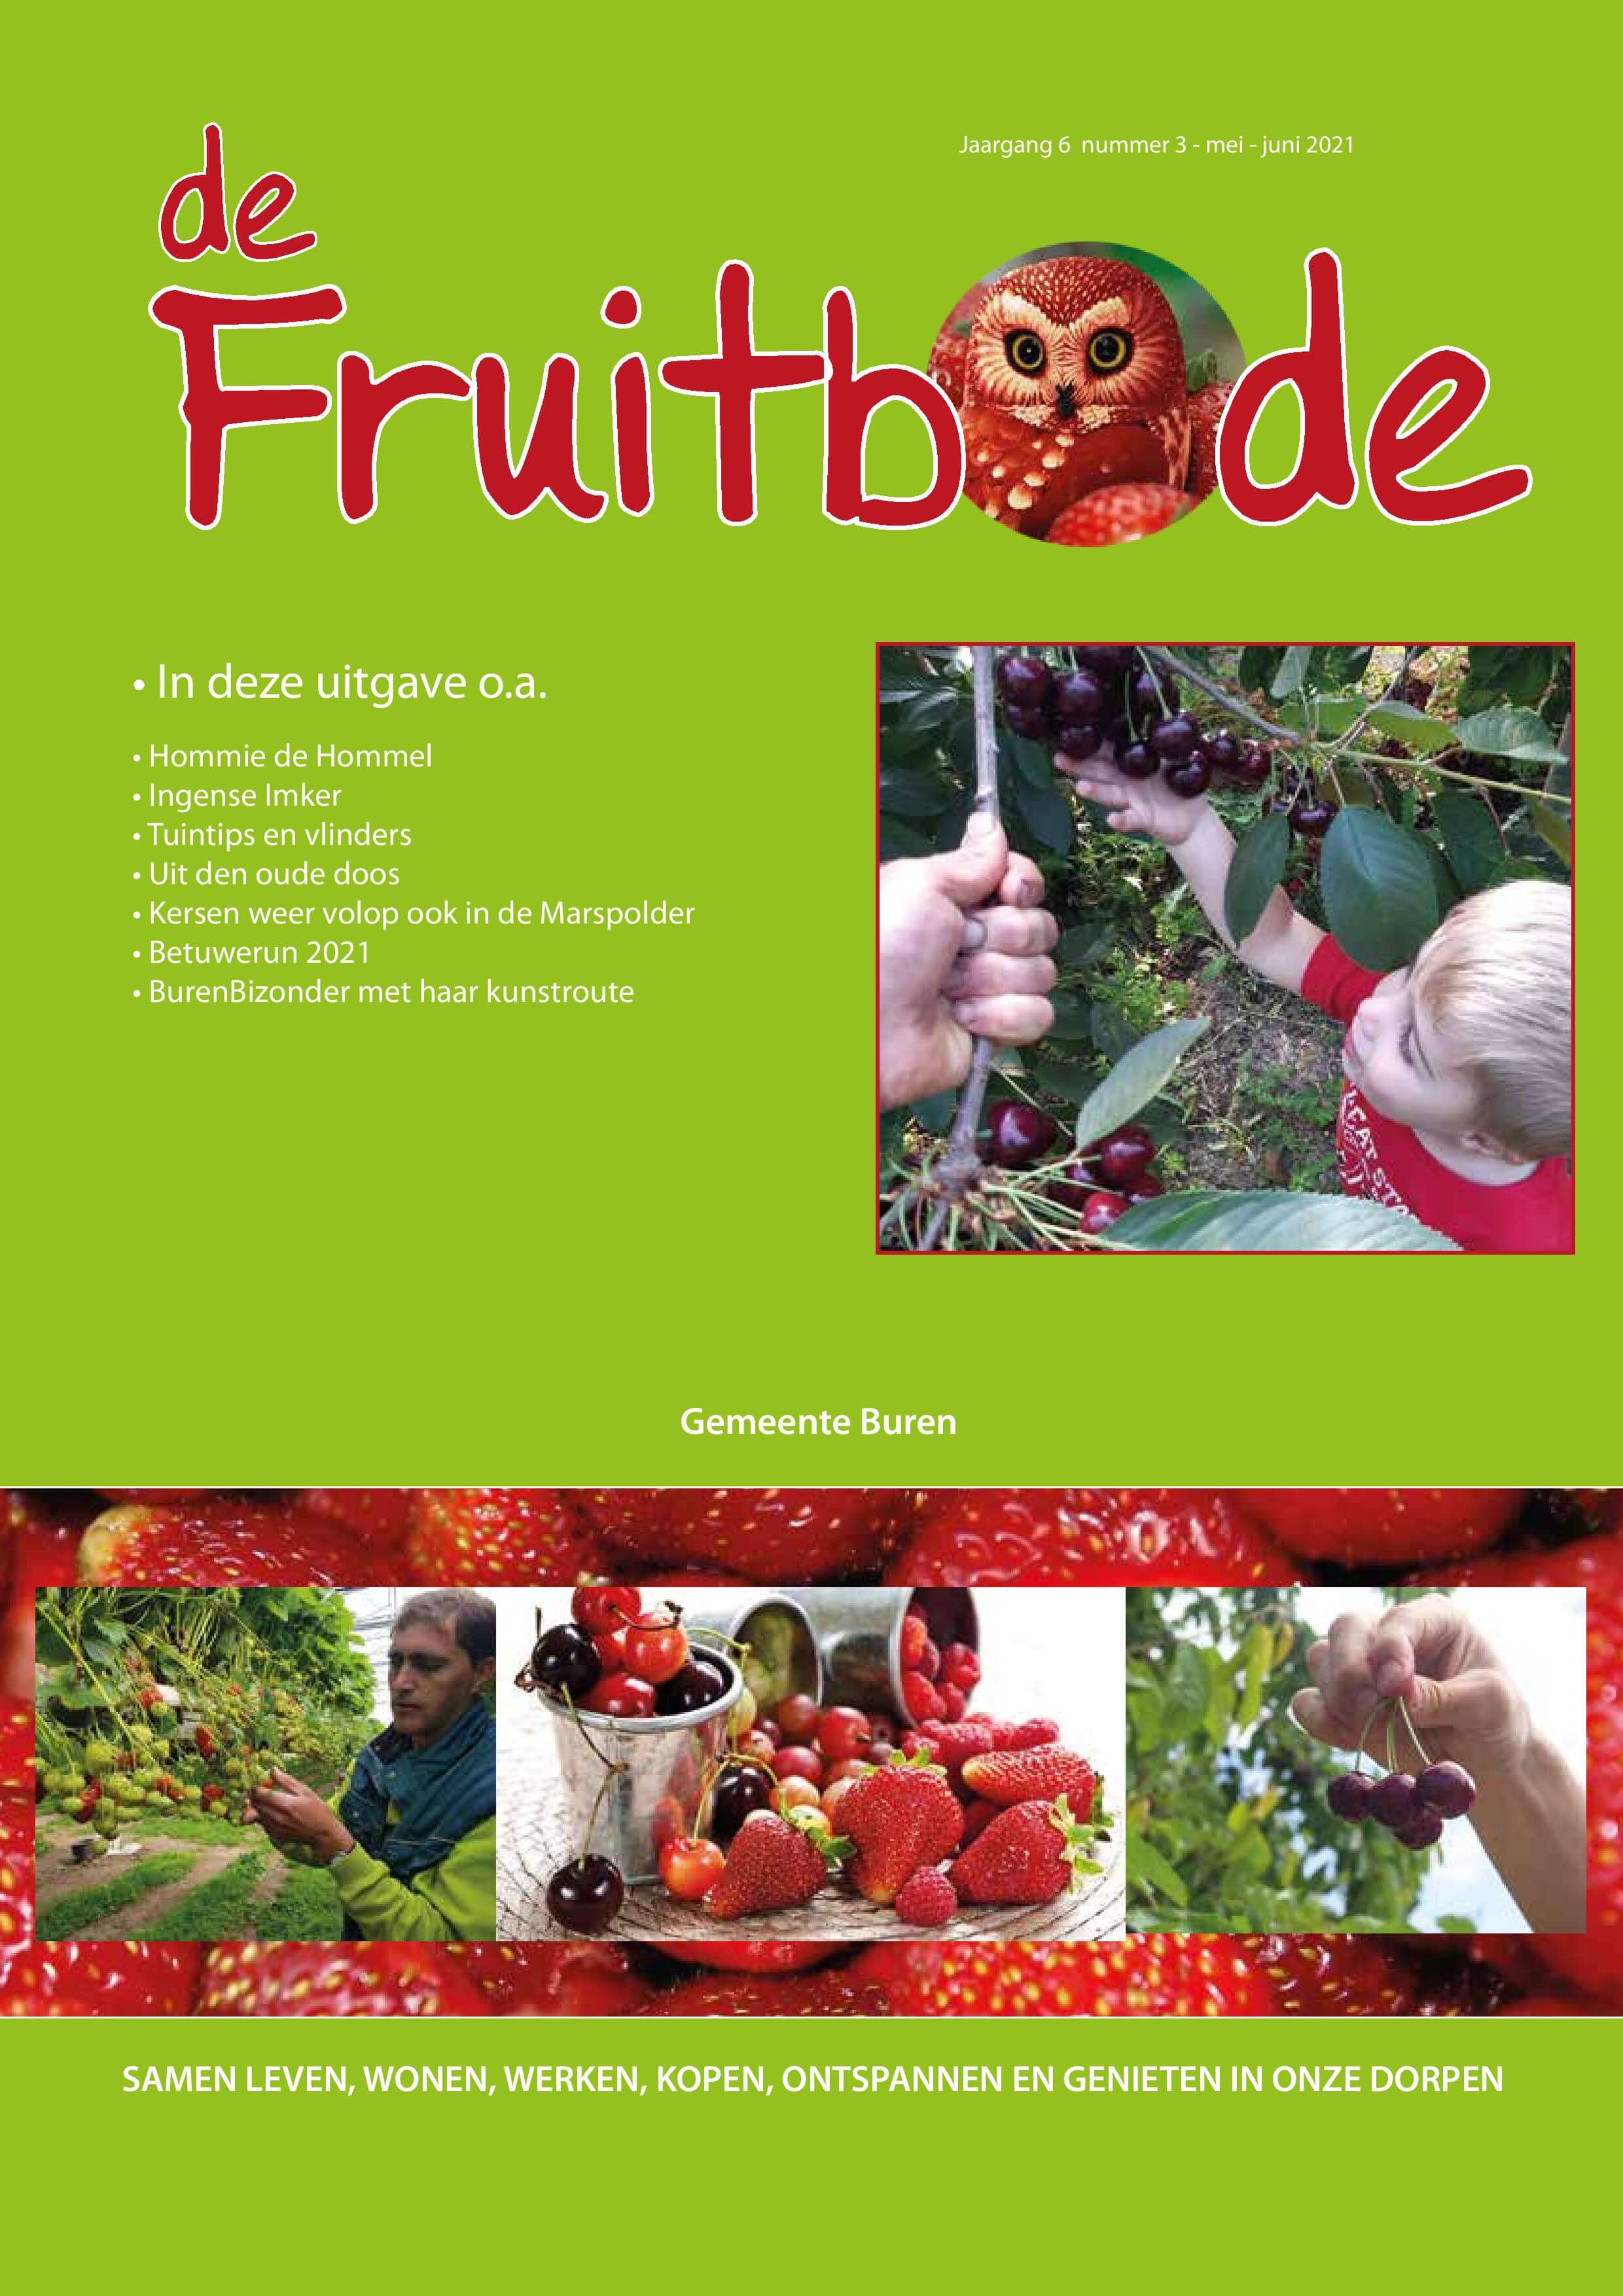 De Fruitbode Magazine